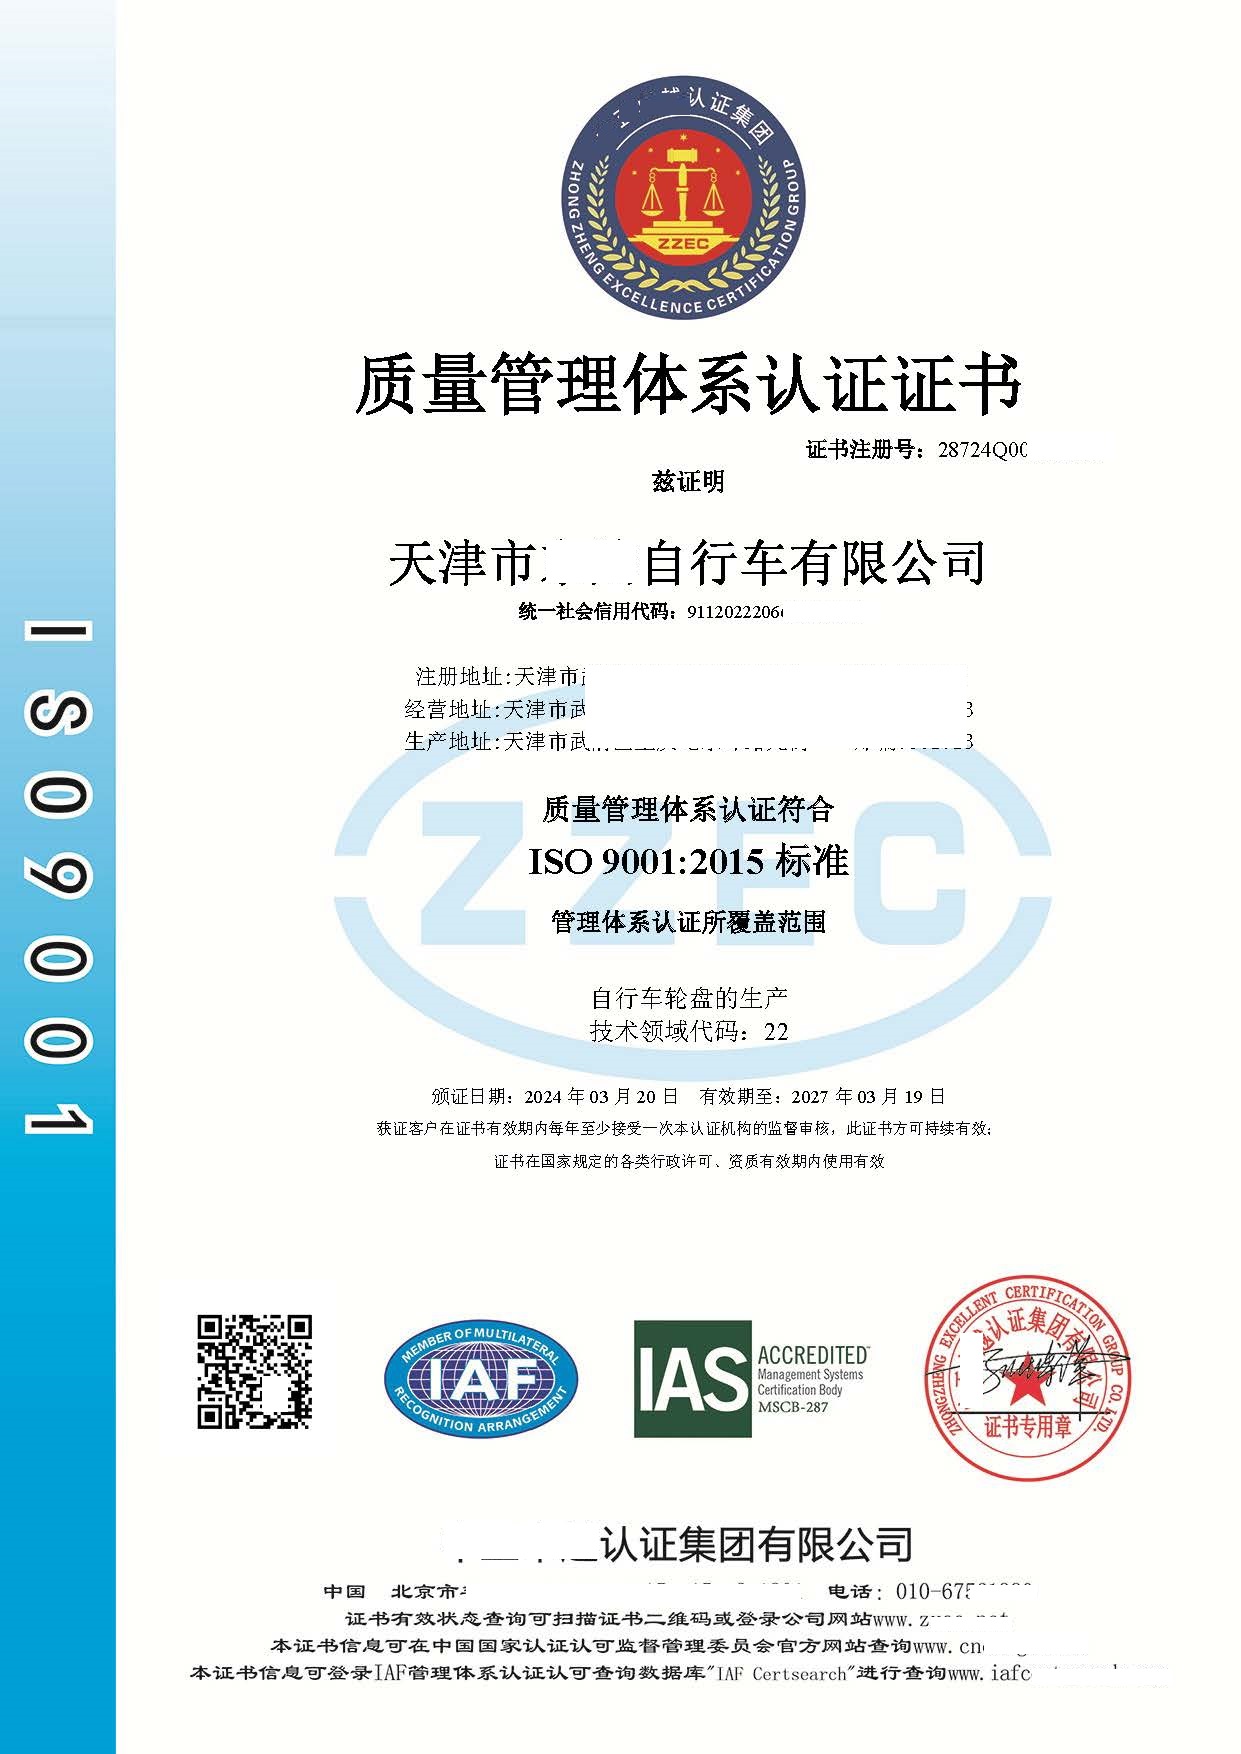 恭喜  天津市**自行车有限公司  获得  ISO9001质量管理体系认证证书